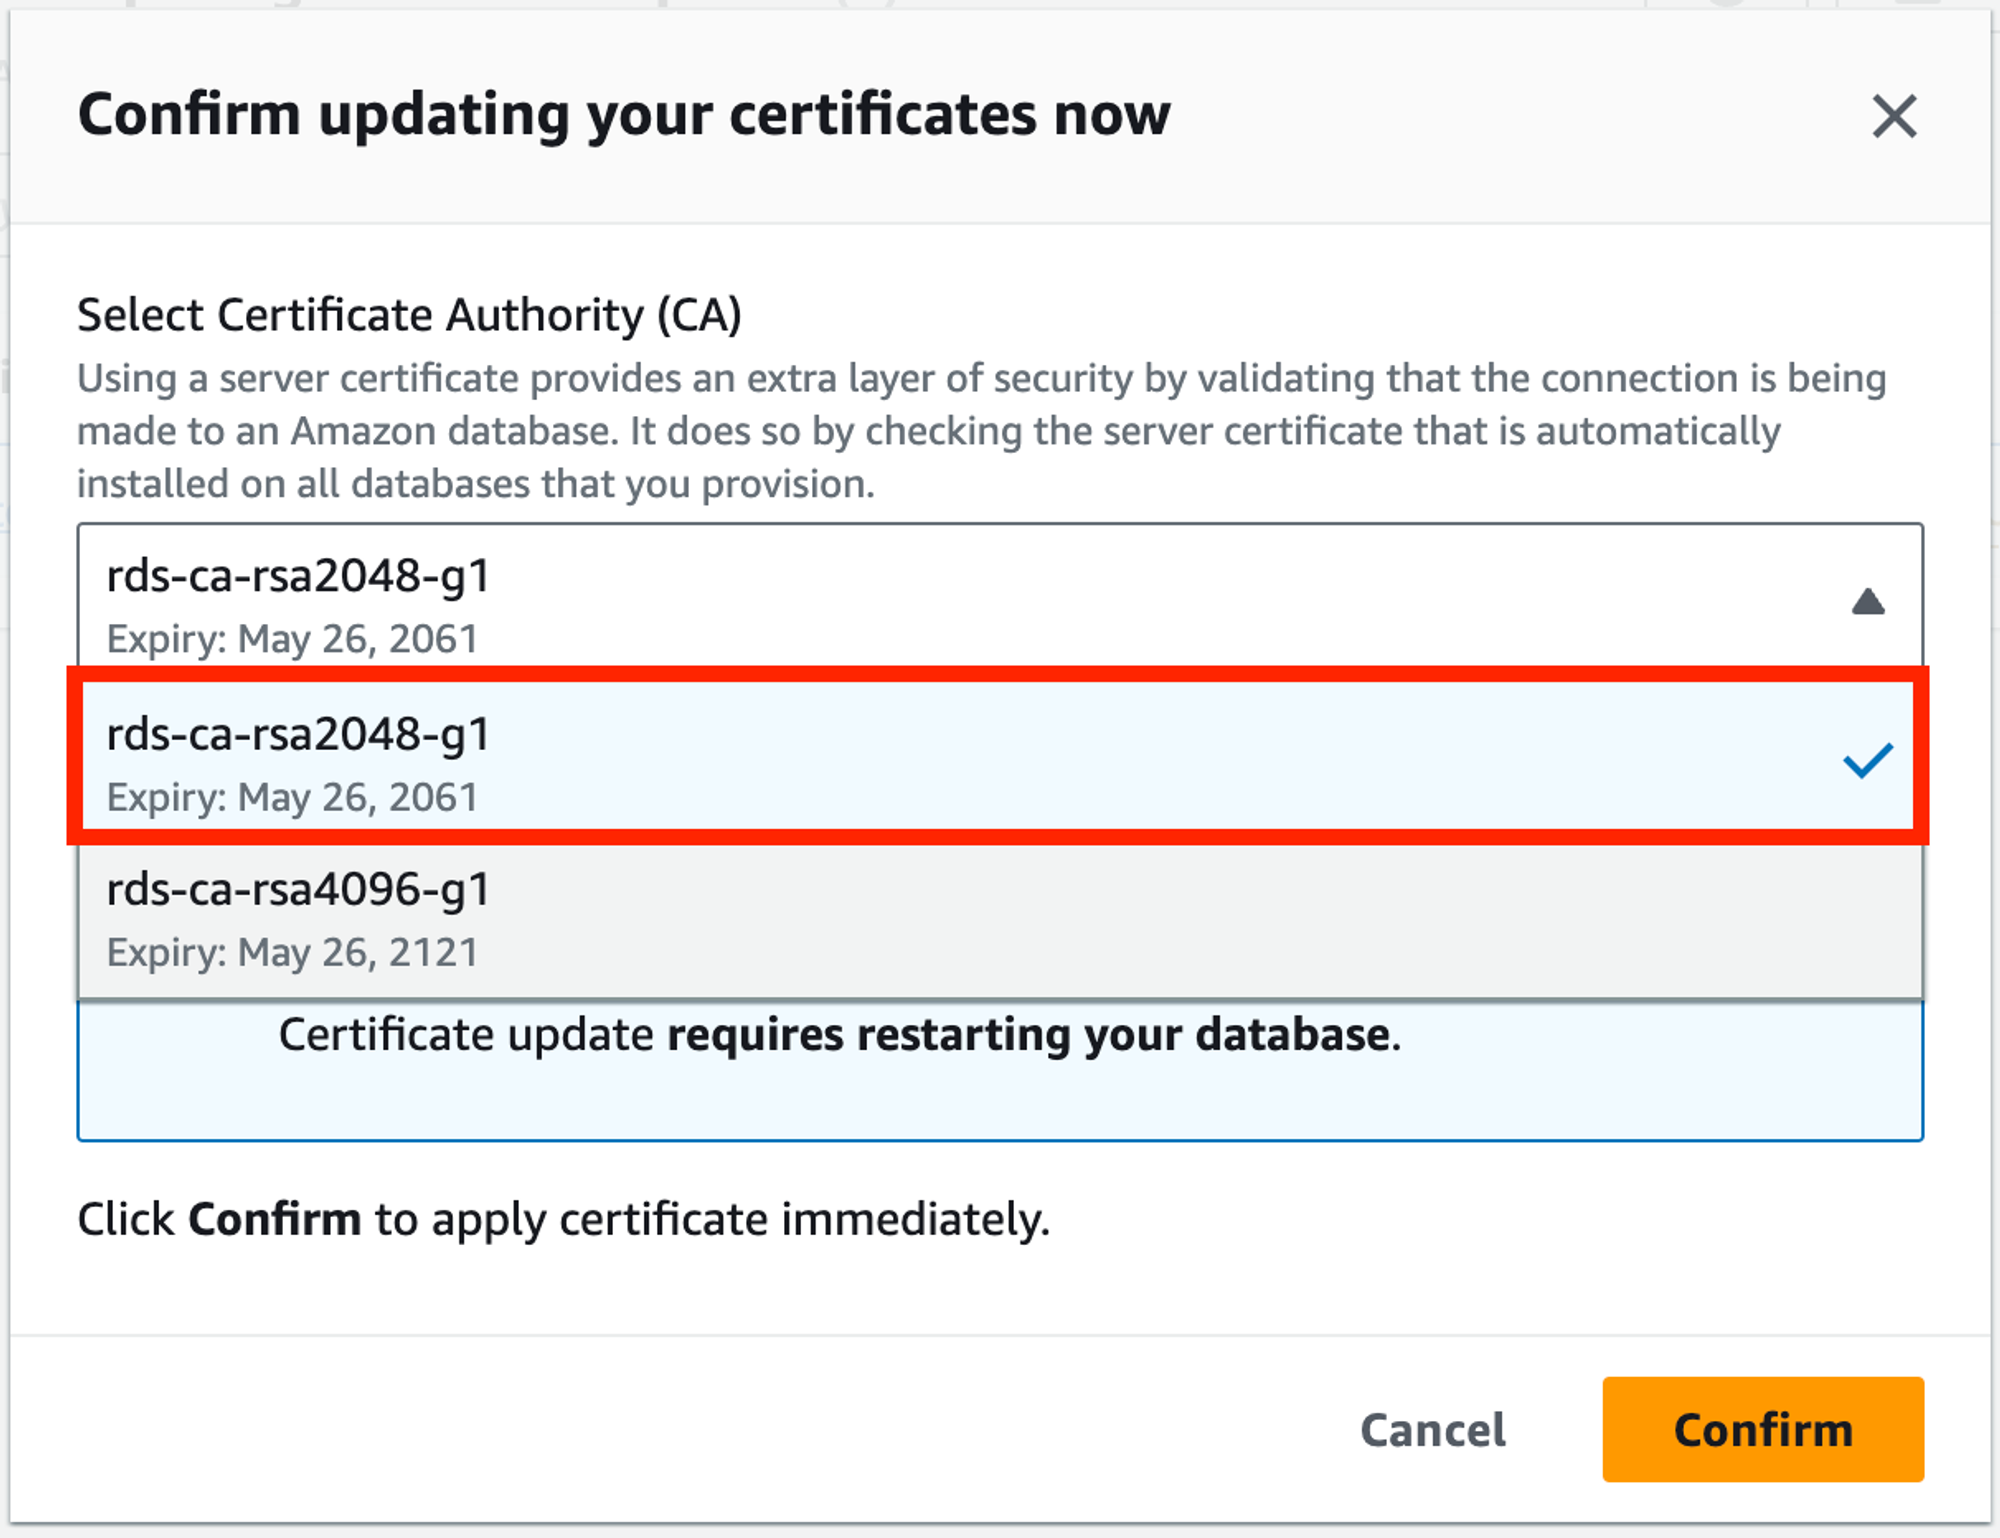 選擇 rds-ca-rsa2048-g1（此憑證與原先的 rds-ca-2019 有相同加密標準，可參考AWS官方文件：